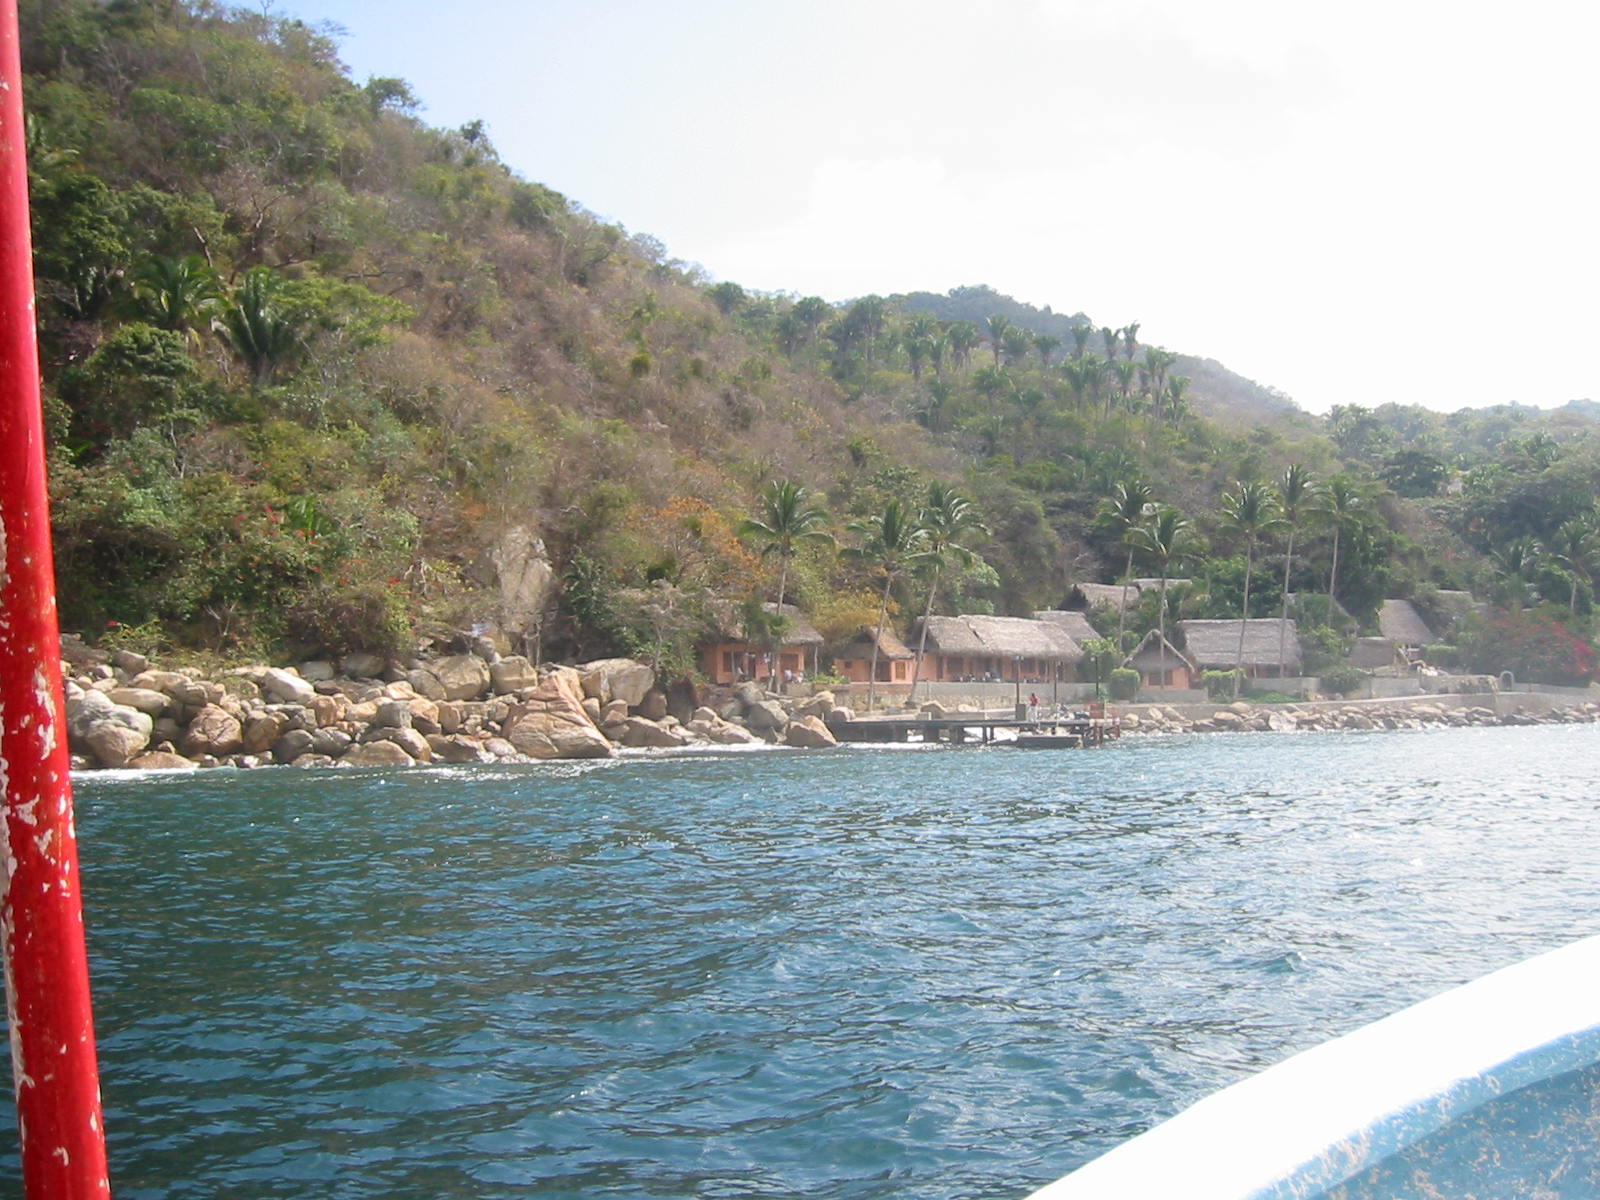 Entering Yalapa's bay